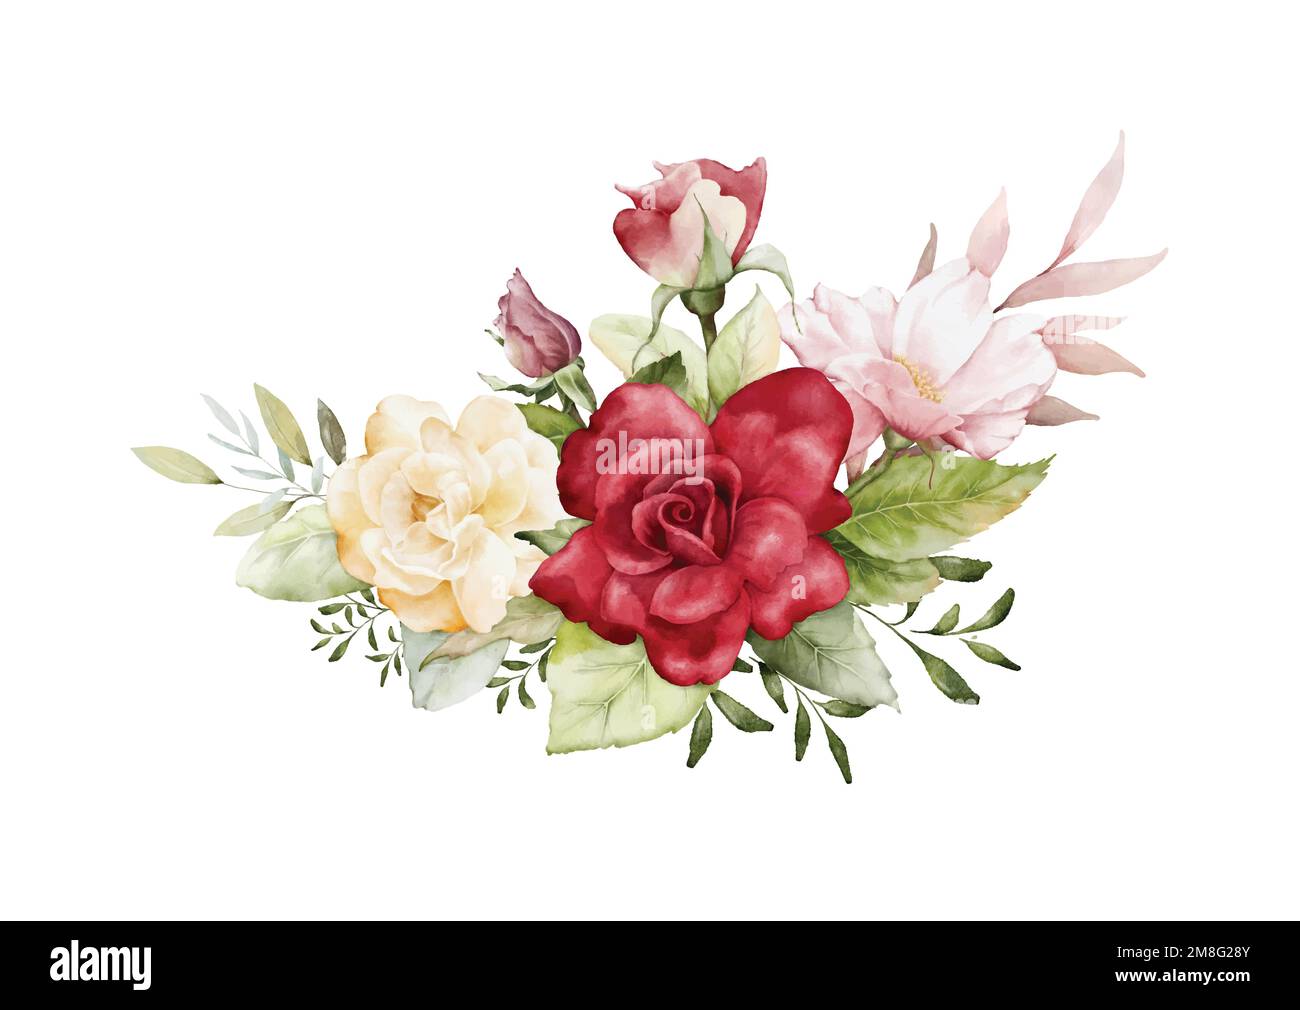 Aquarelle Arrangements mit Rosenblumen. Rosenstrauß, Rot, Gelb und Blätter für Hochzeits-, Valentinskarten oder Grußkarten. Botani Stock Vektor